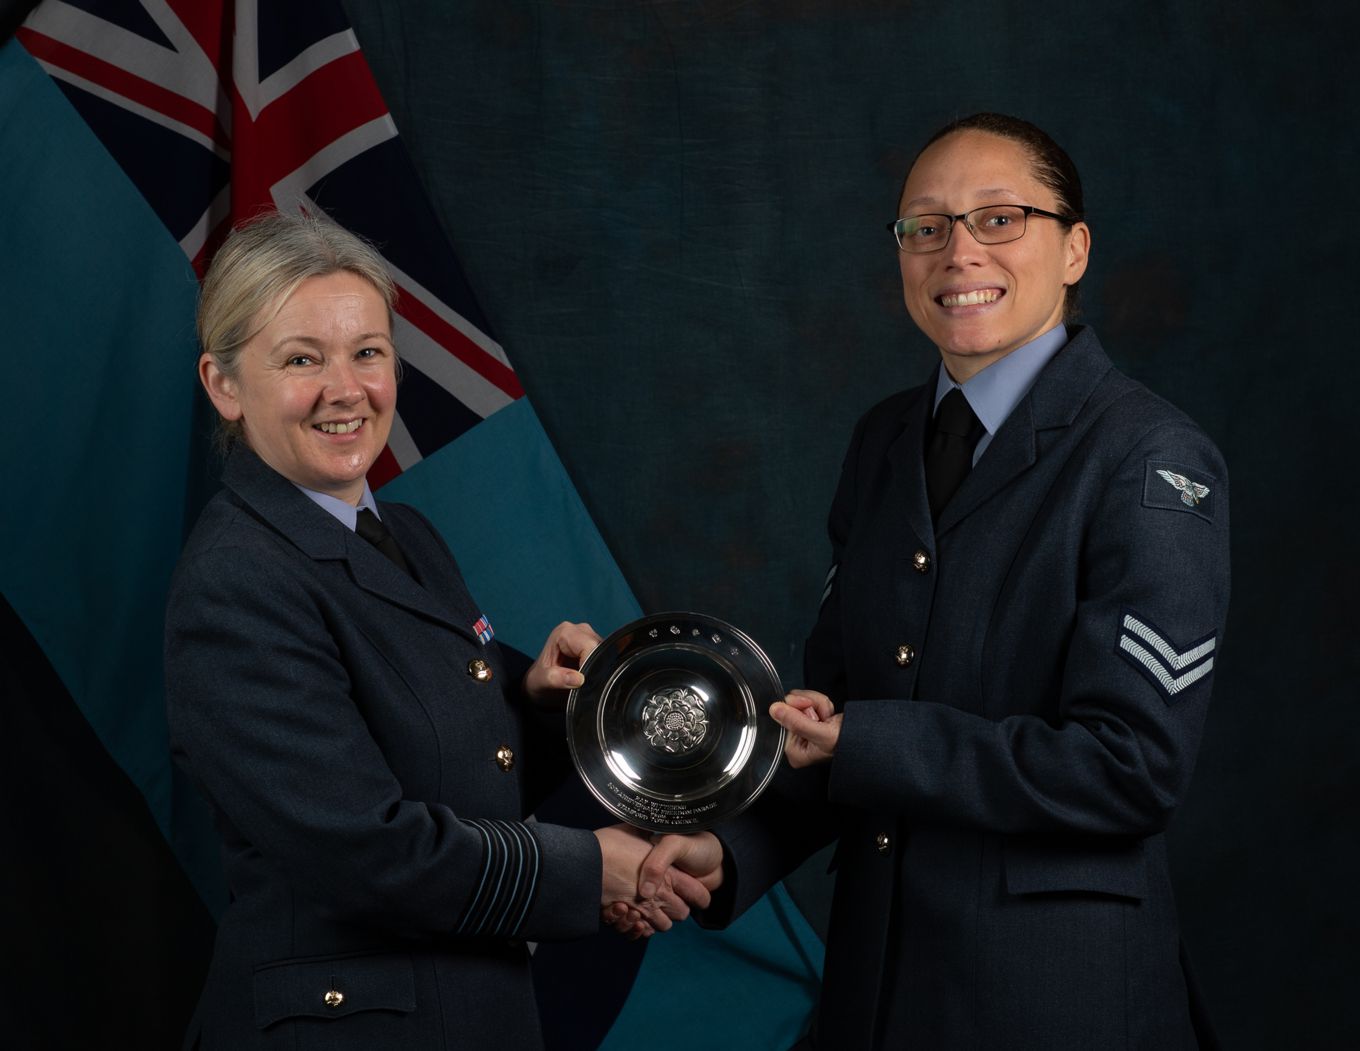 Cpl Impey in RAF uniform accepting an award